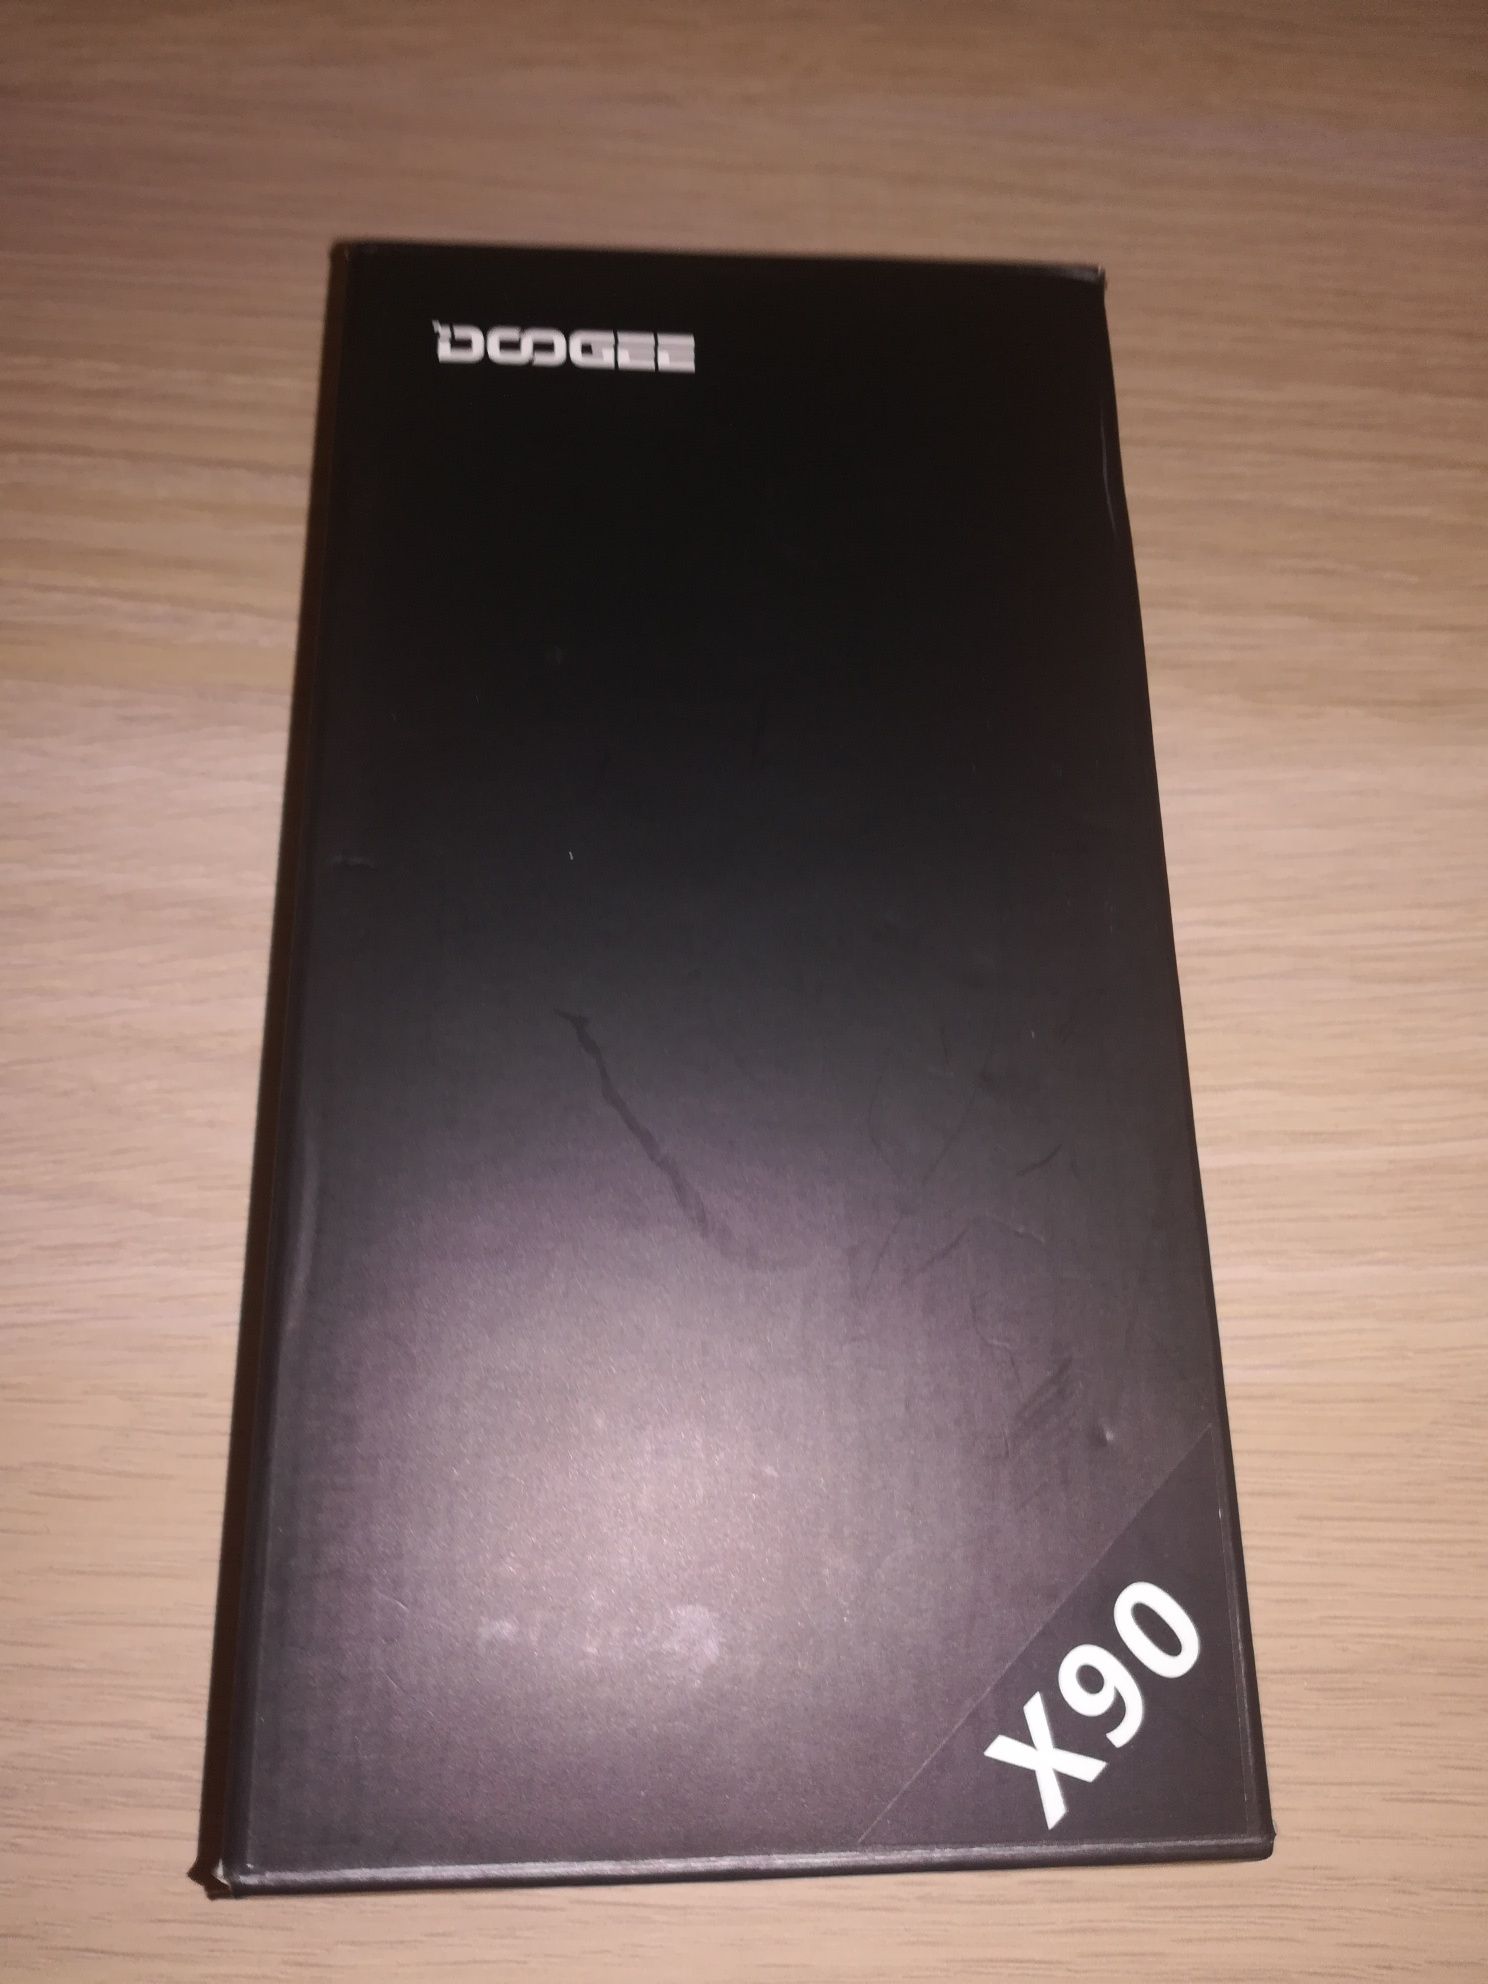 Doogee x90 full box